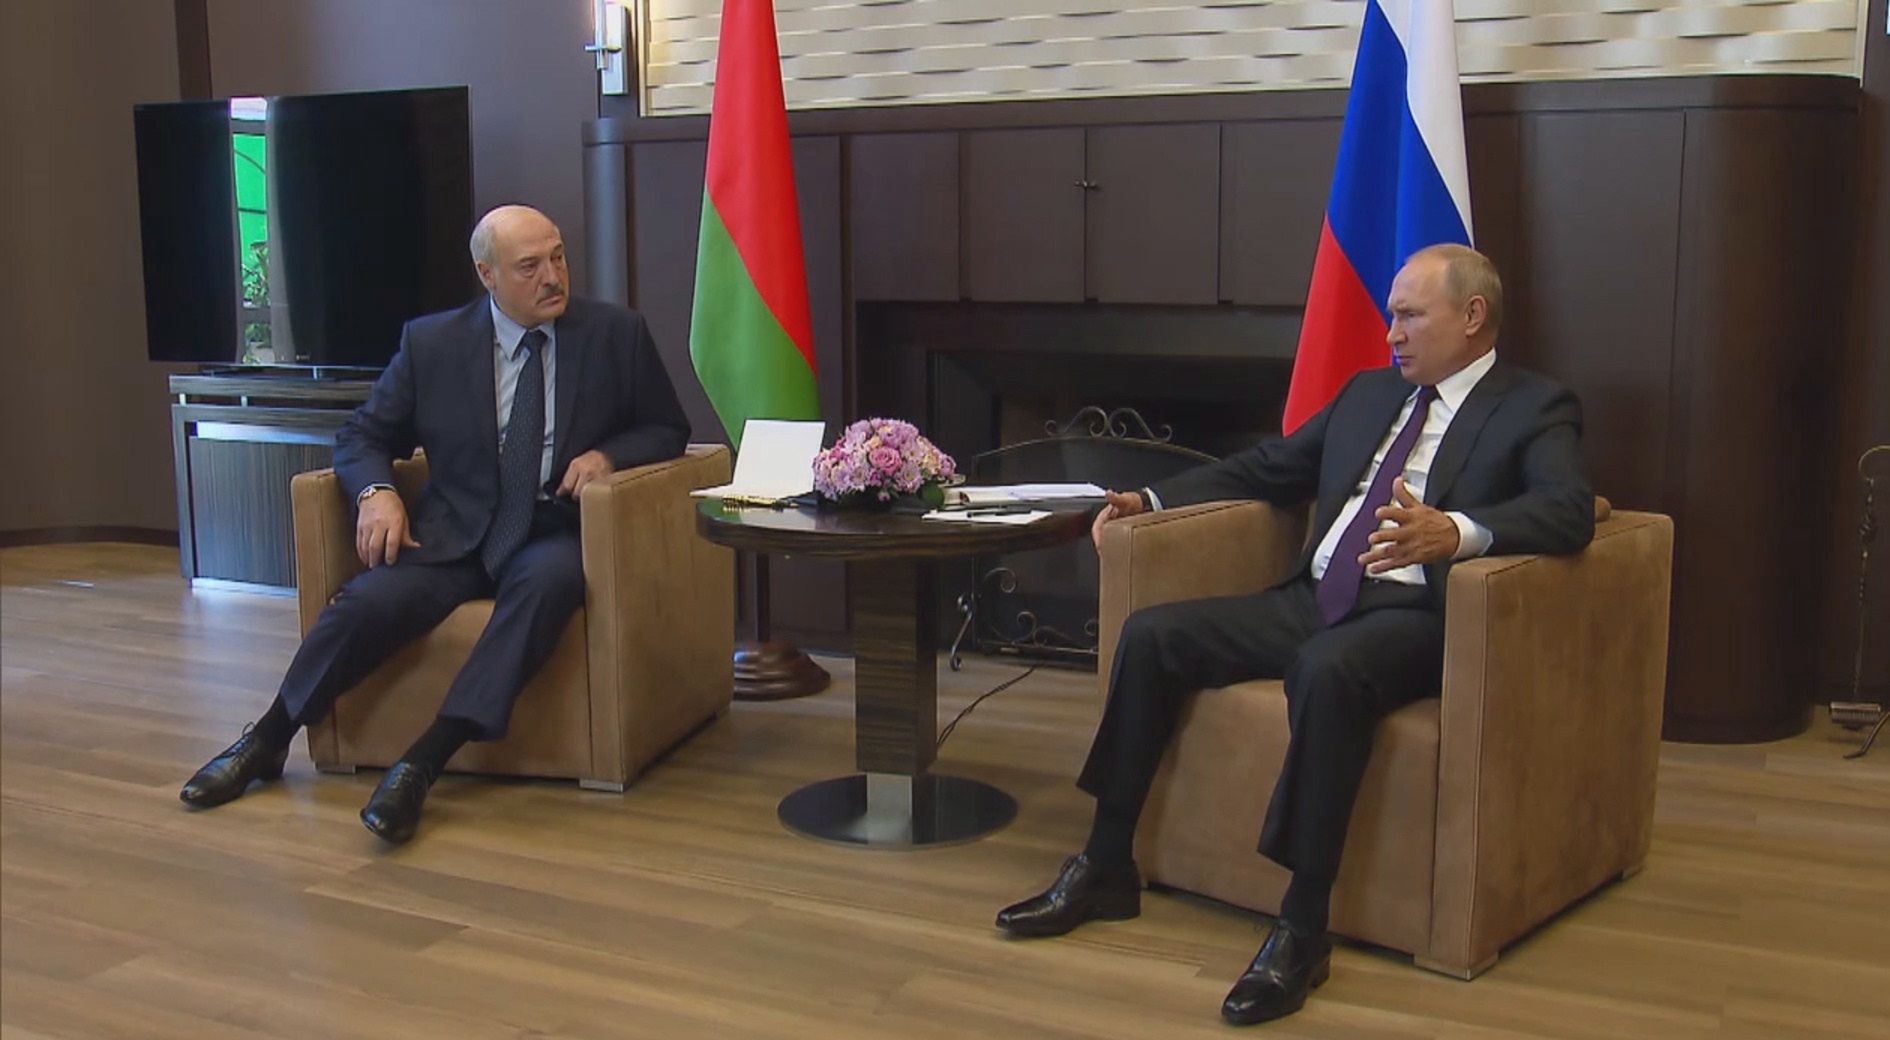 Putin upokarza Łukaszenkę. Wystarczy spojrzeć na jego pozę